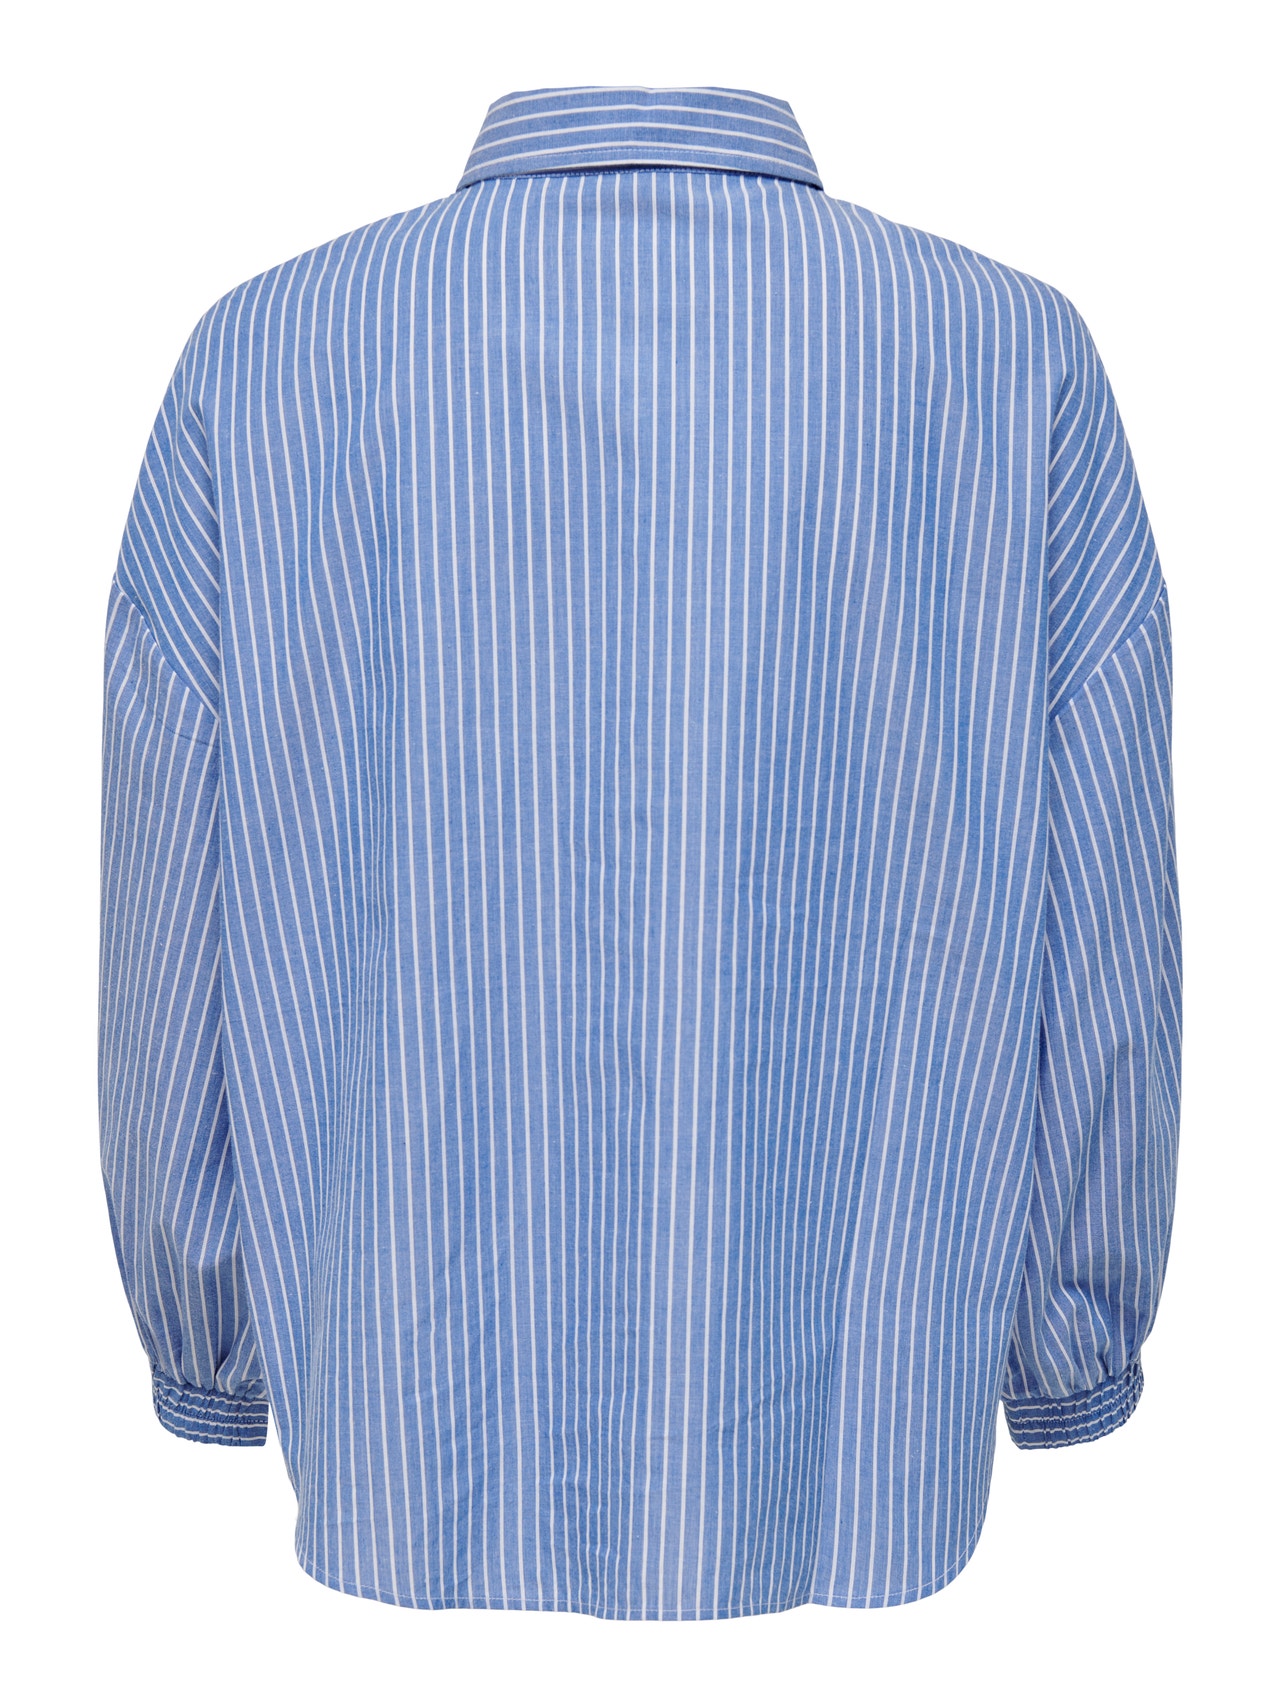 ONLY Camisas Corte oversized Cuello de camisa Puños elásticos Hombros caídos -Infinity - 15271969